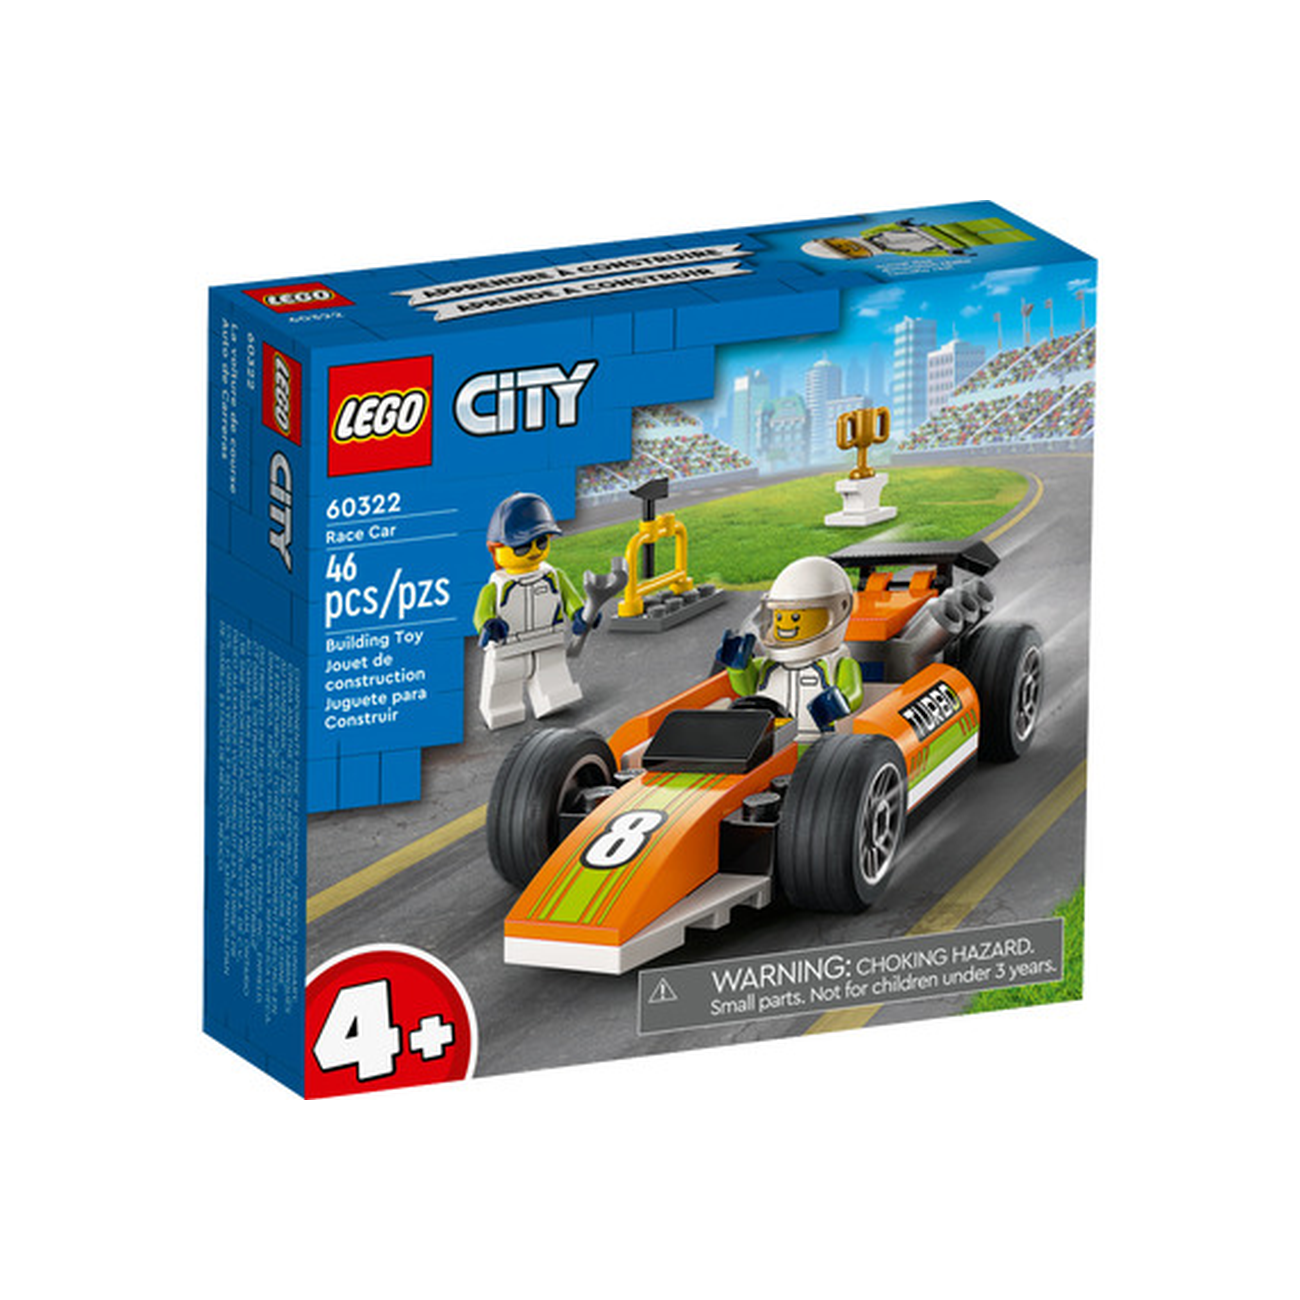 LEGO City Car – Play